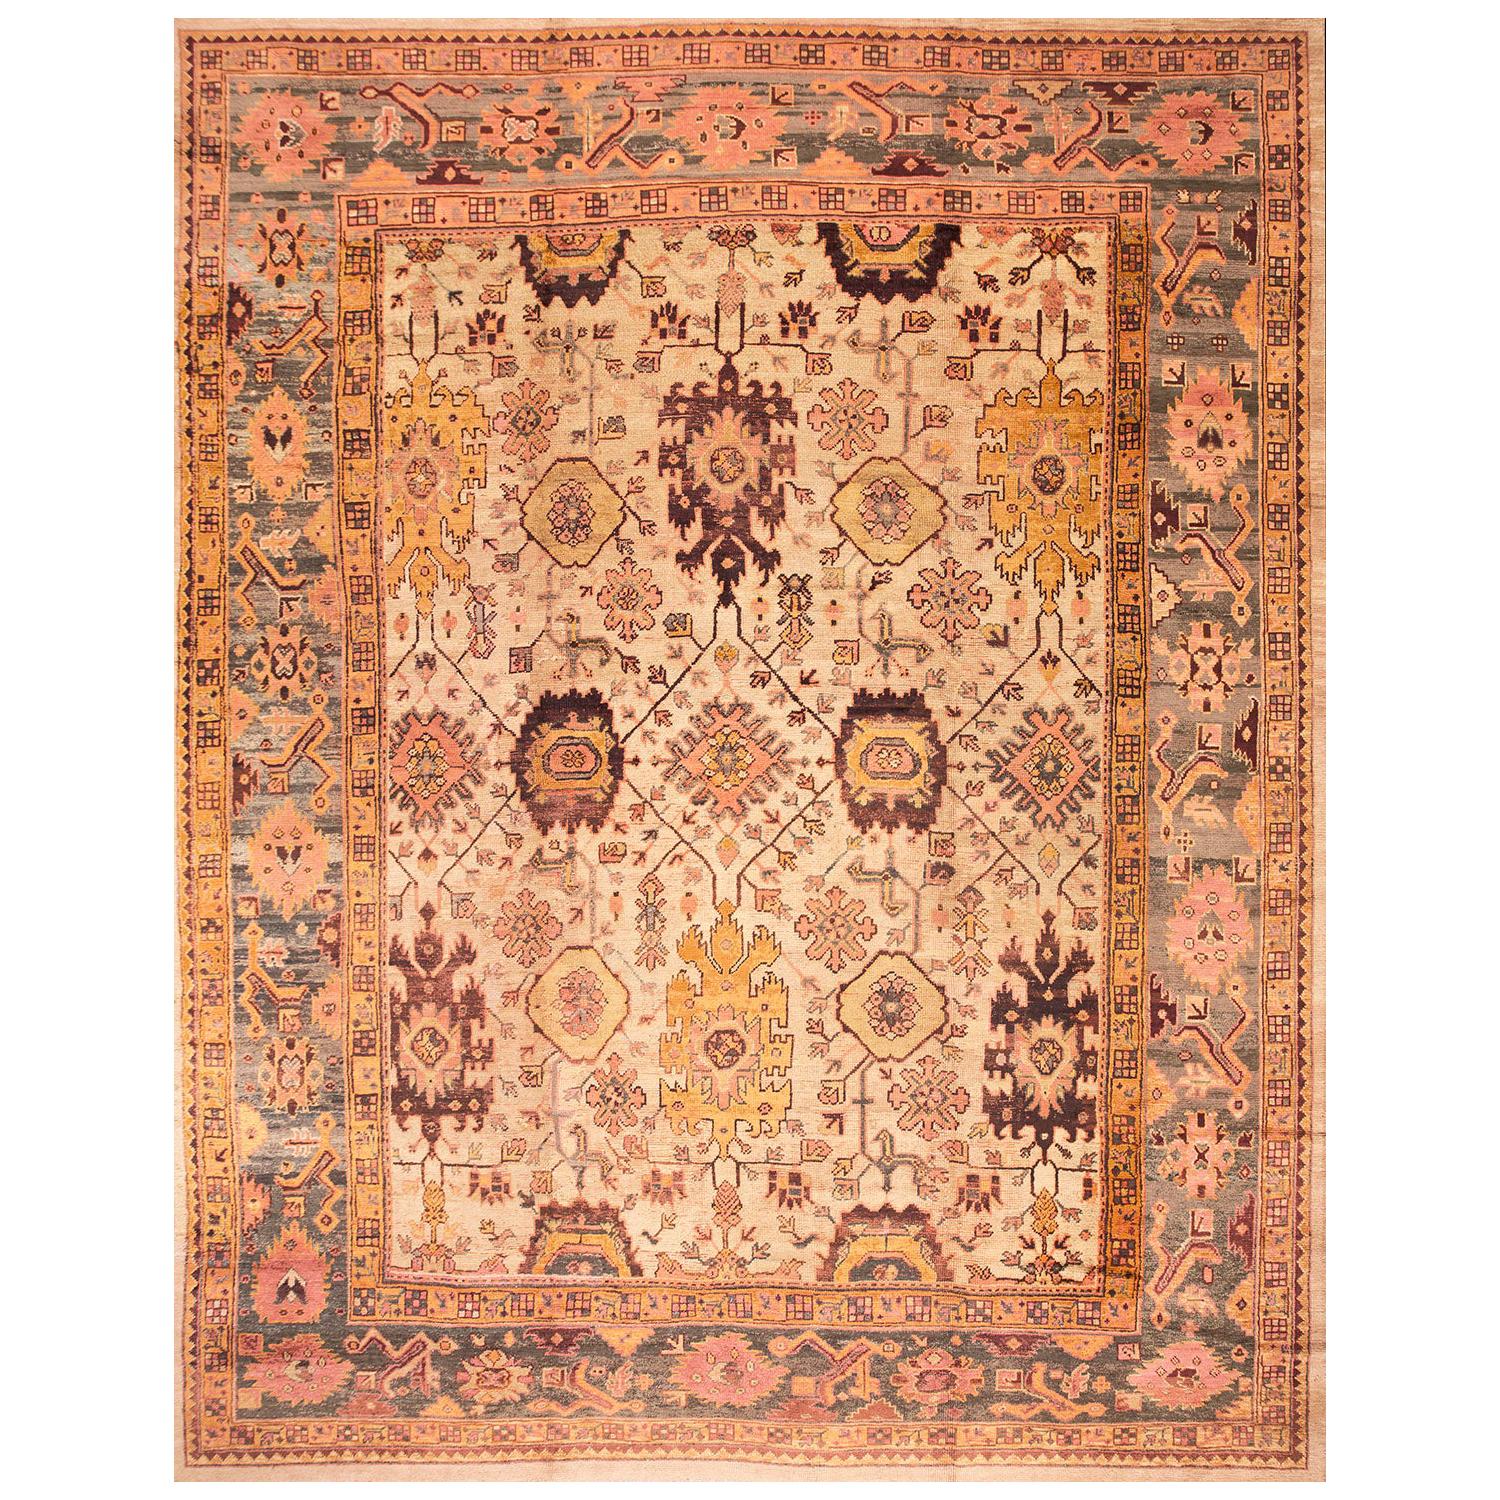 Early 20 Century Turkish Oushak Carpet ( 13' x 16'4" - 395 x 498 )